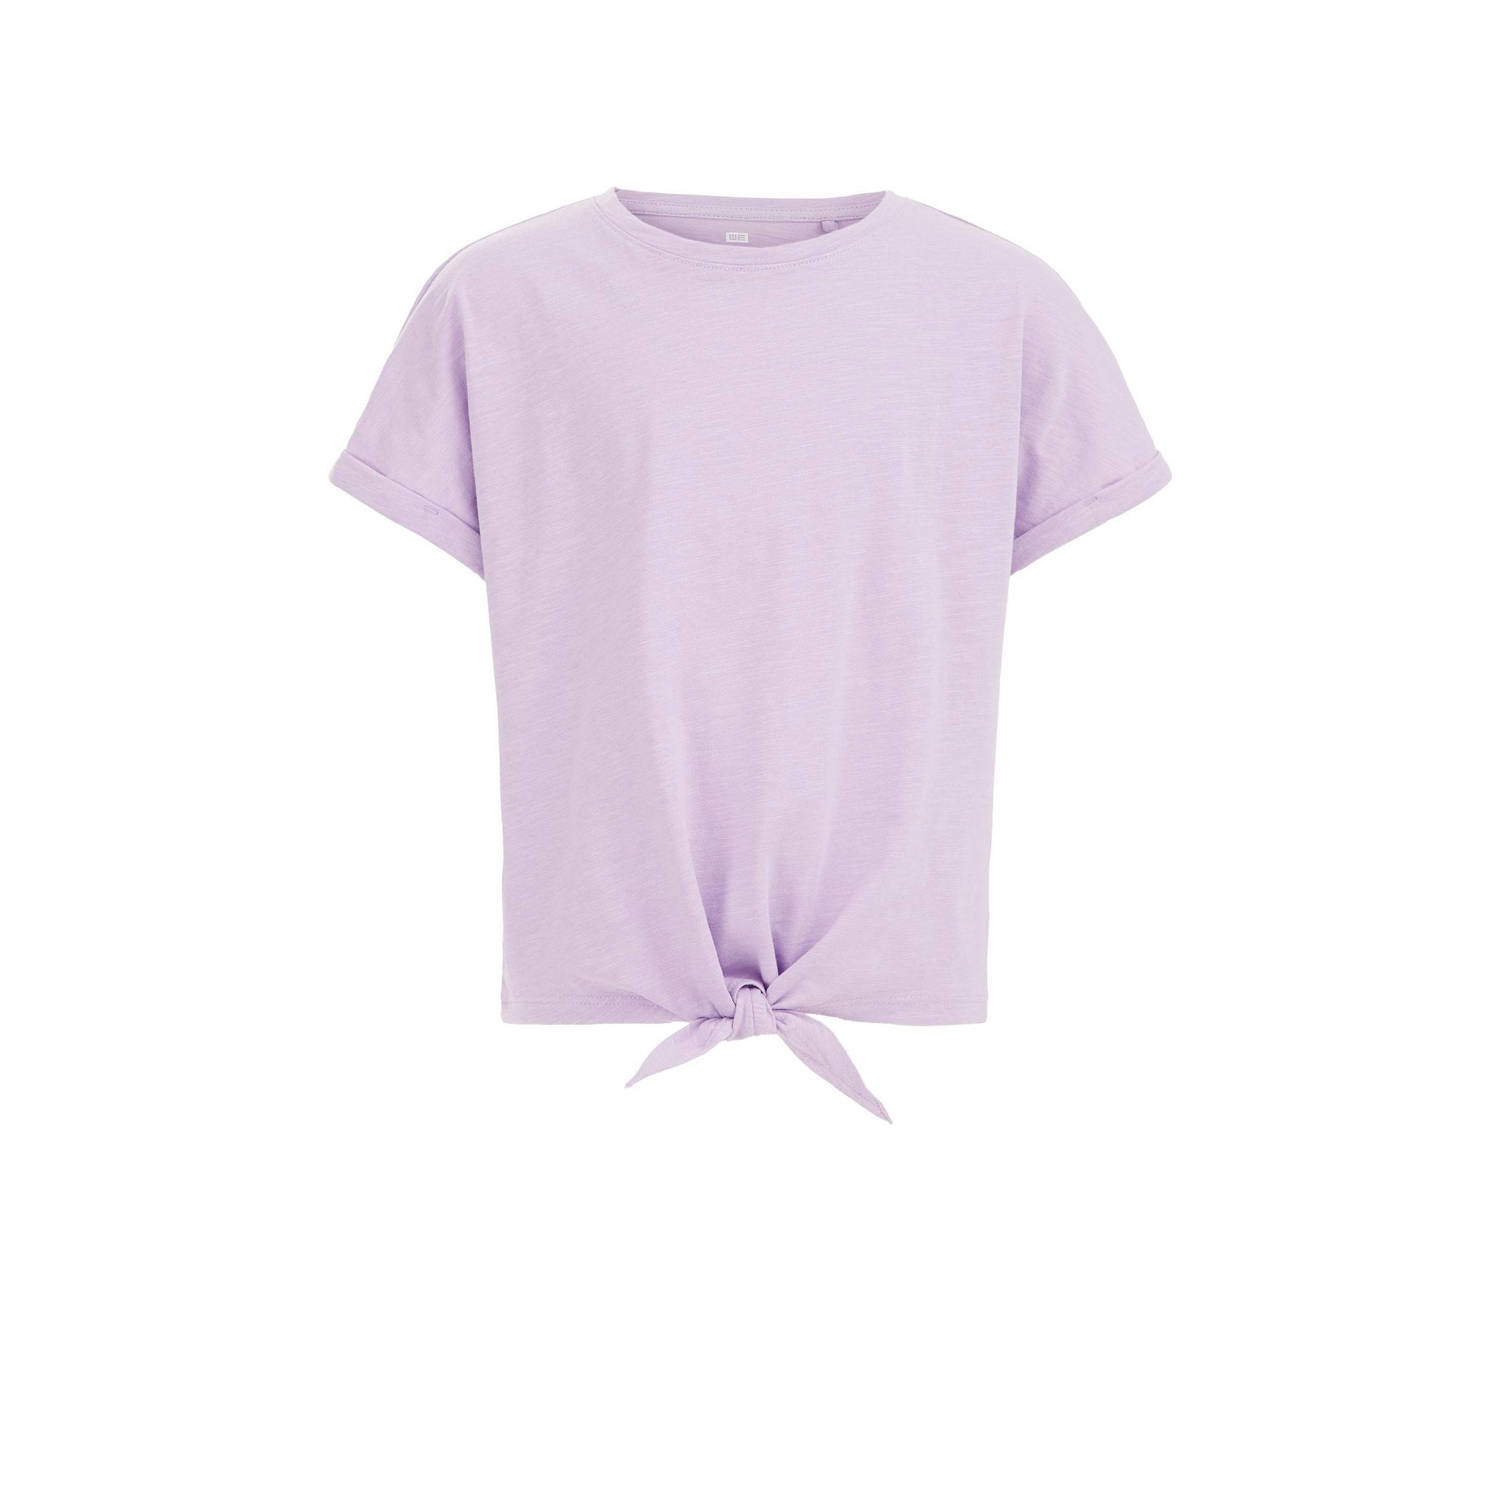 WE Fashion T-shirt slate purple Paars Meisjes Katoen Ronde hals Effen 110 116